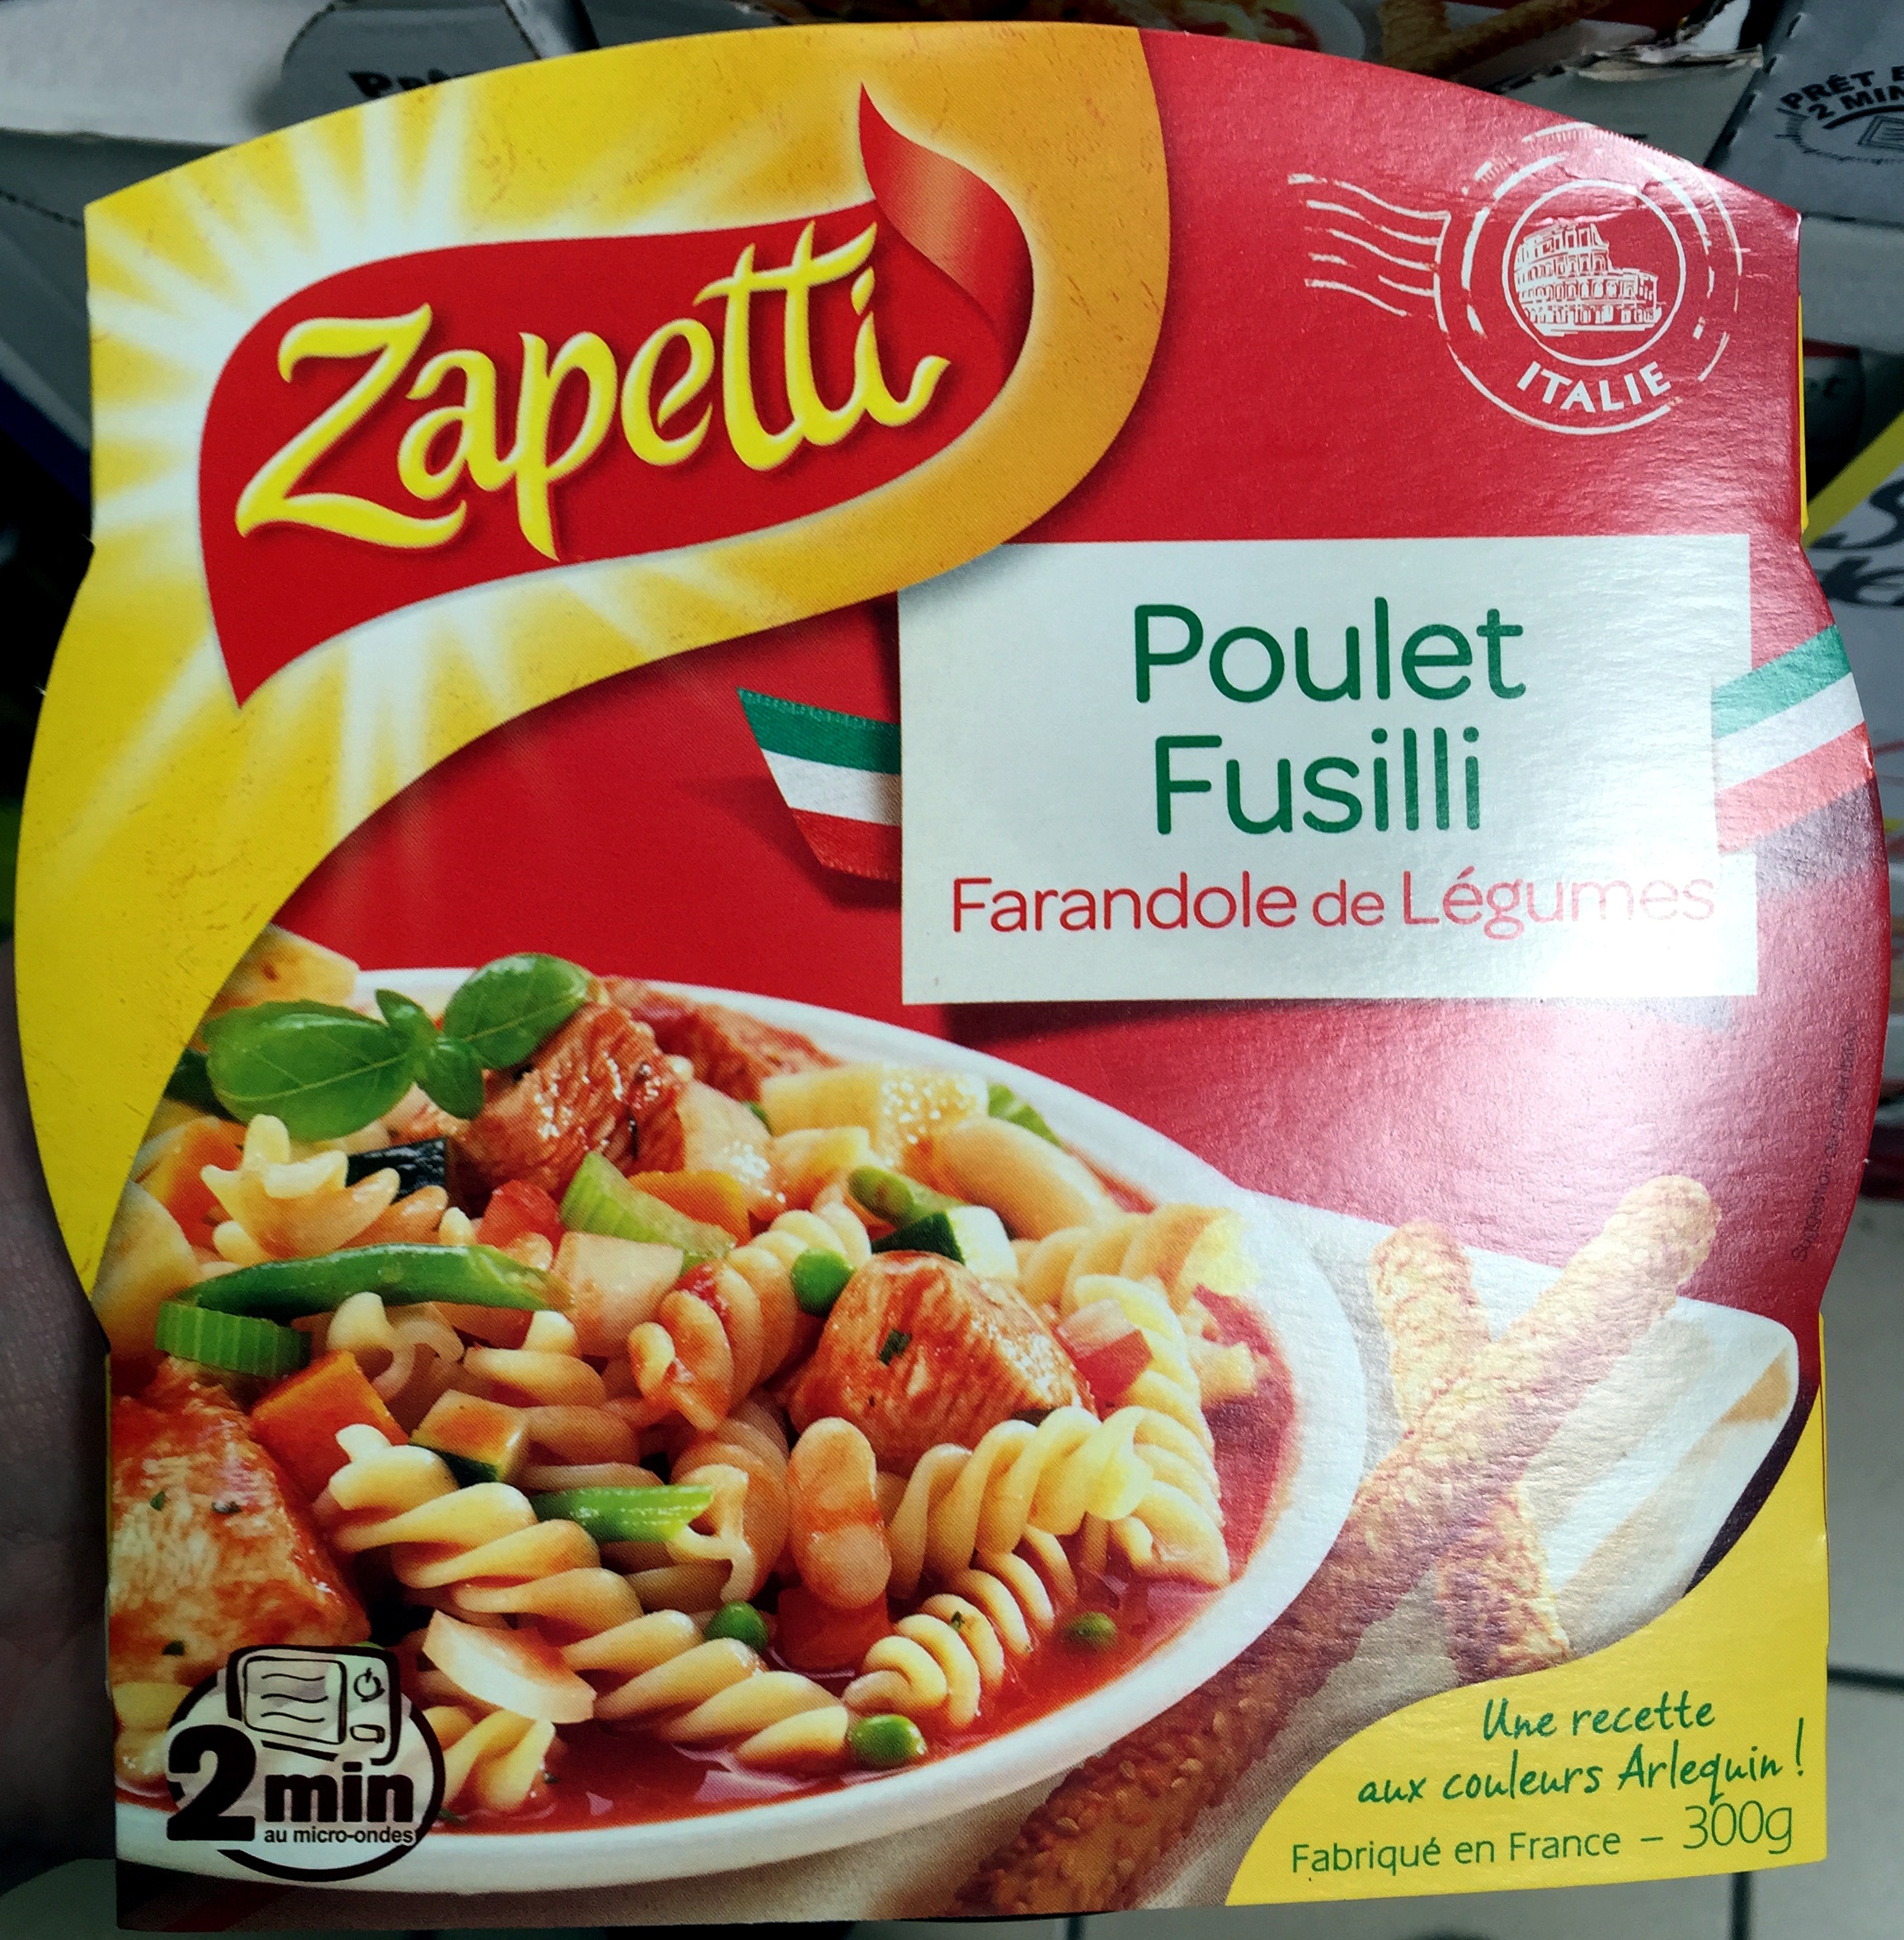 Poulet Fusilli, Farandole de Légumes - Product - fr